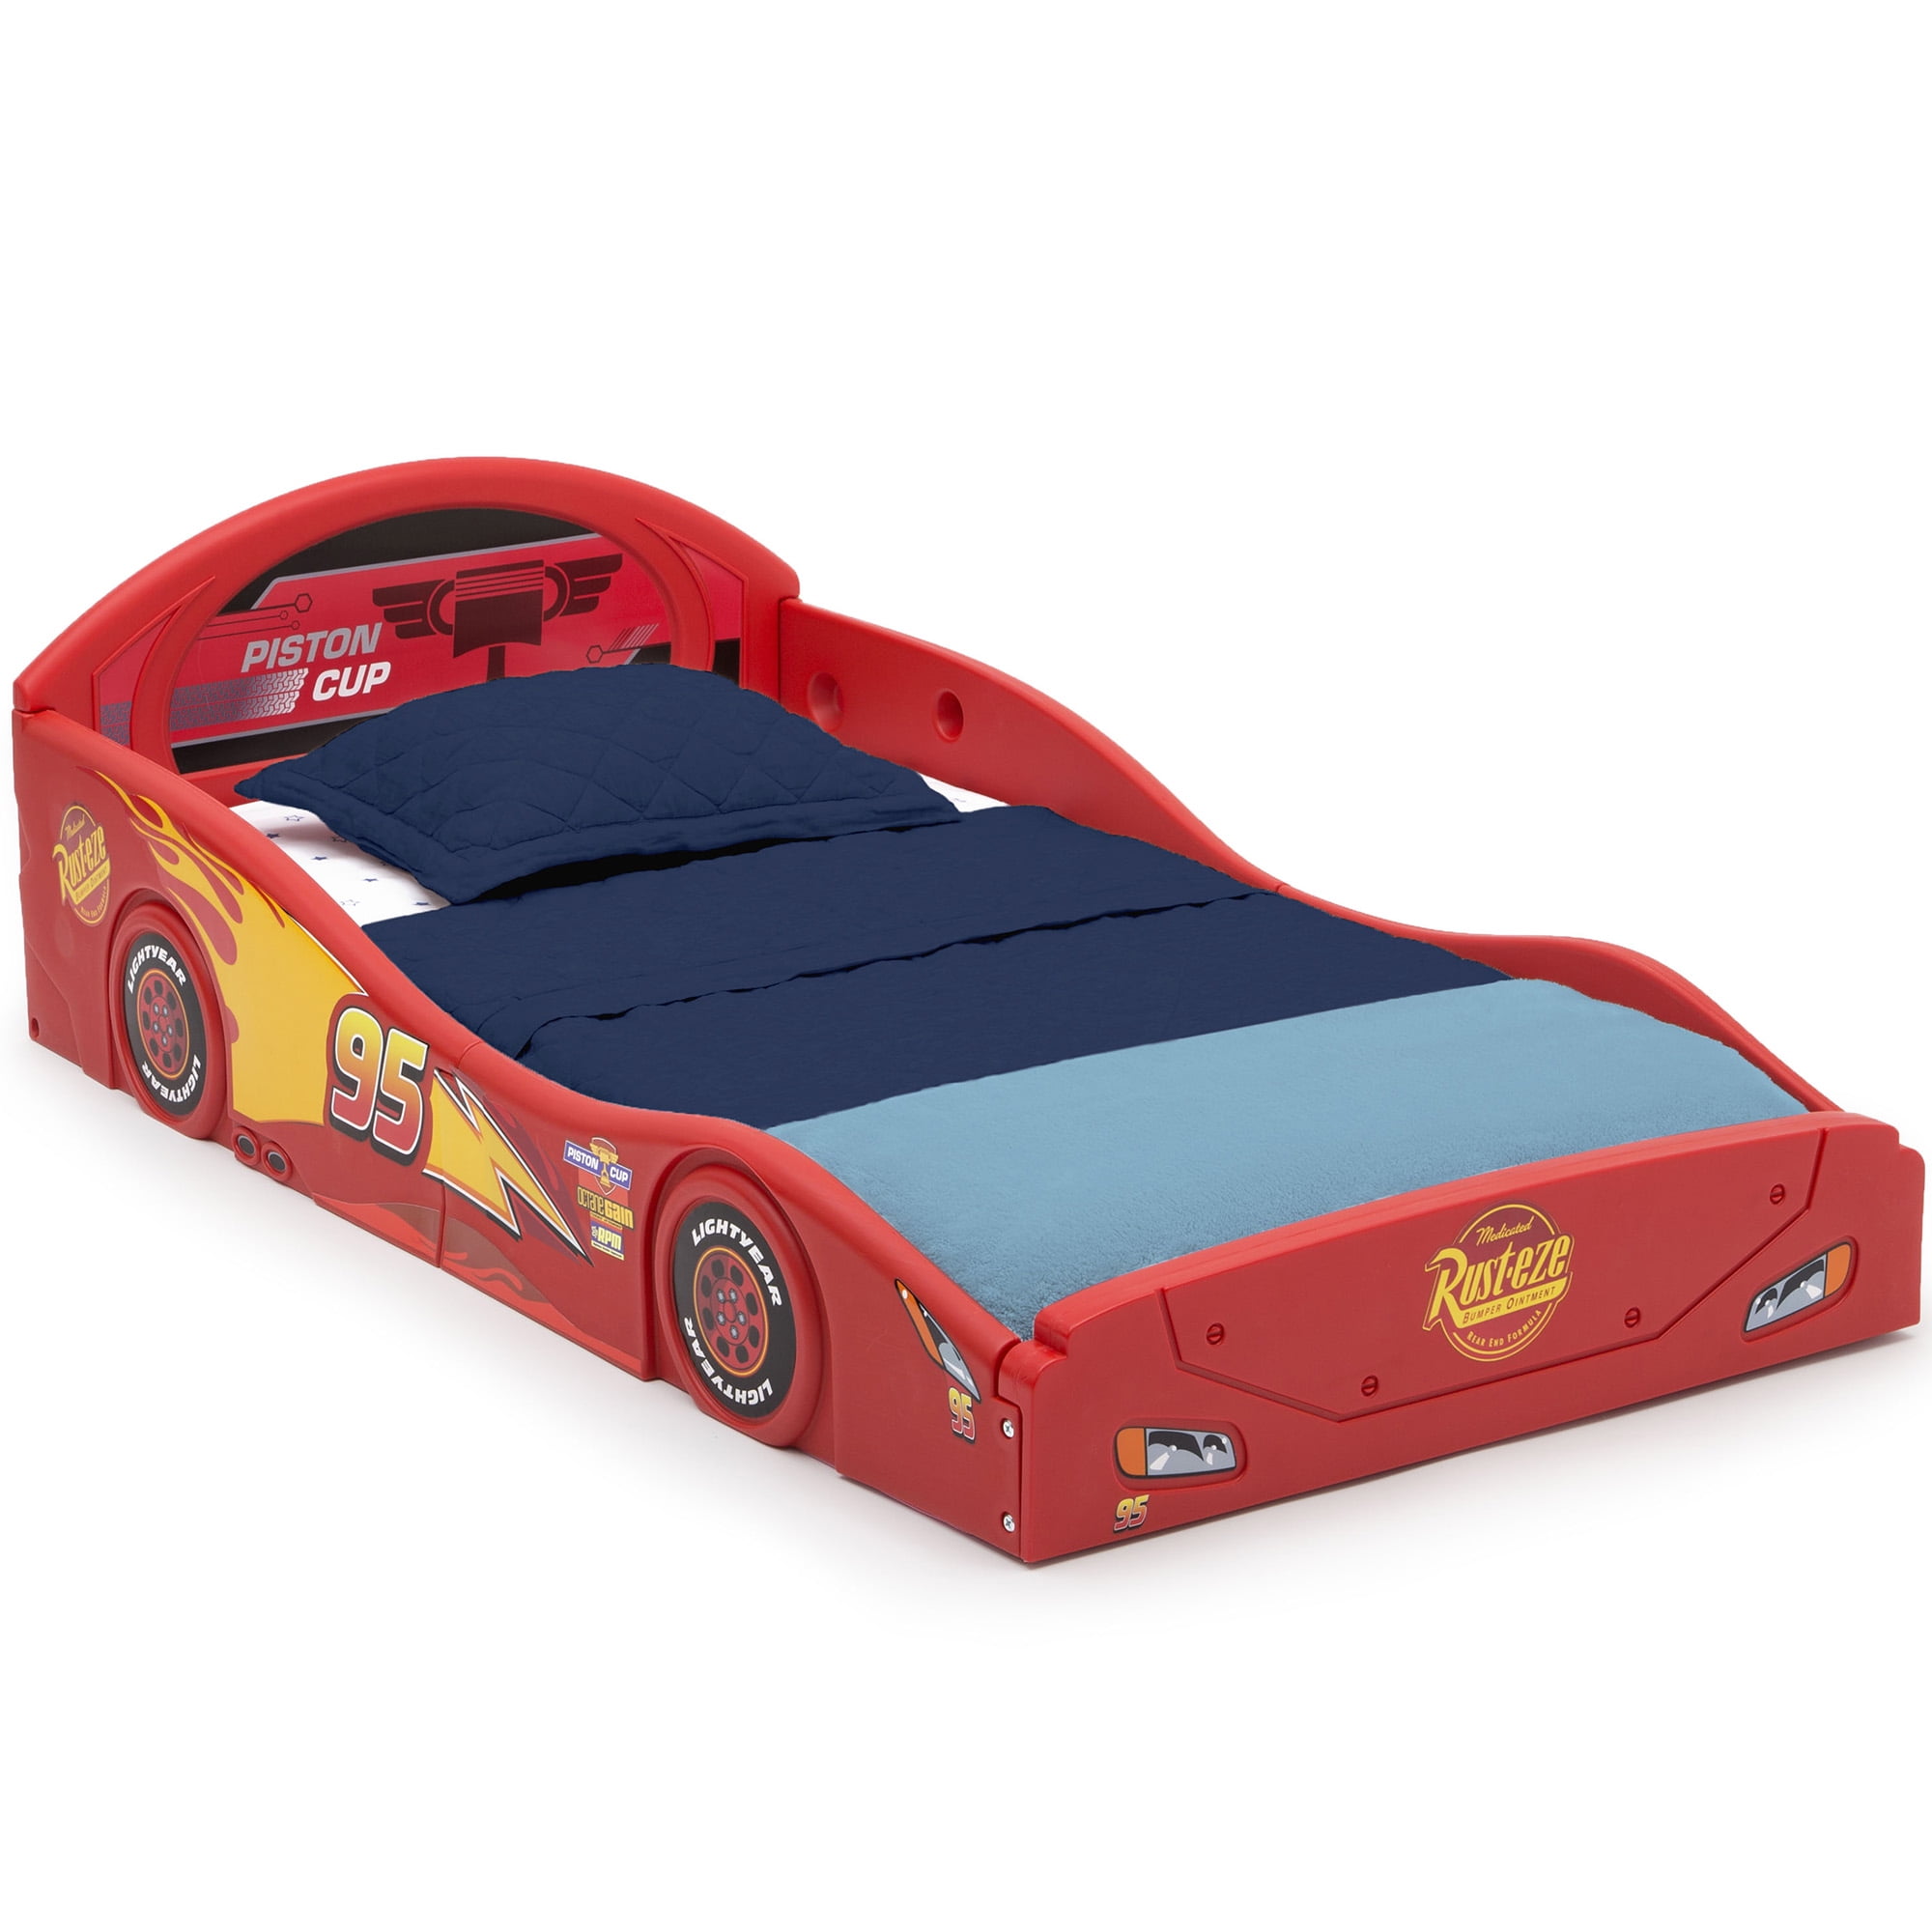 Toddler Bed Wooden Furniture Dis ney Cars Kids Bedroom Race Car Boy Bedroom Safe 